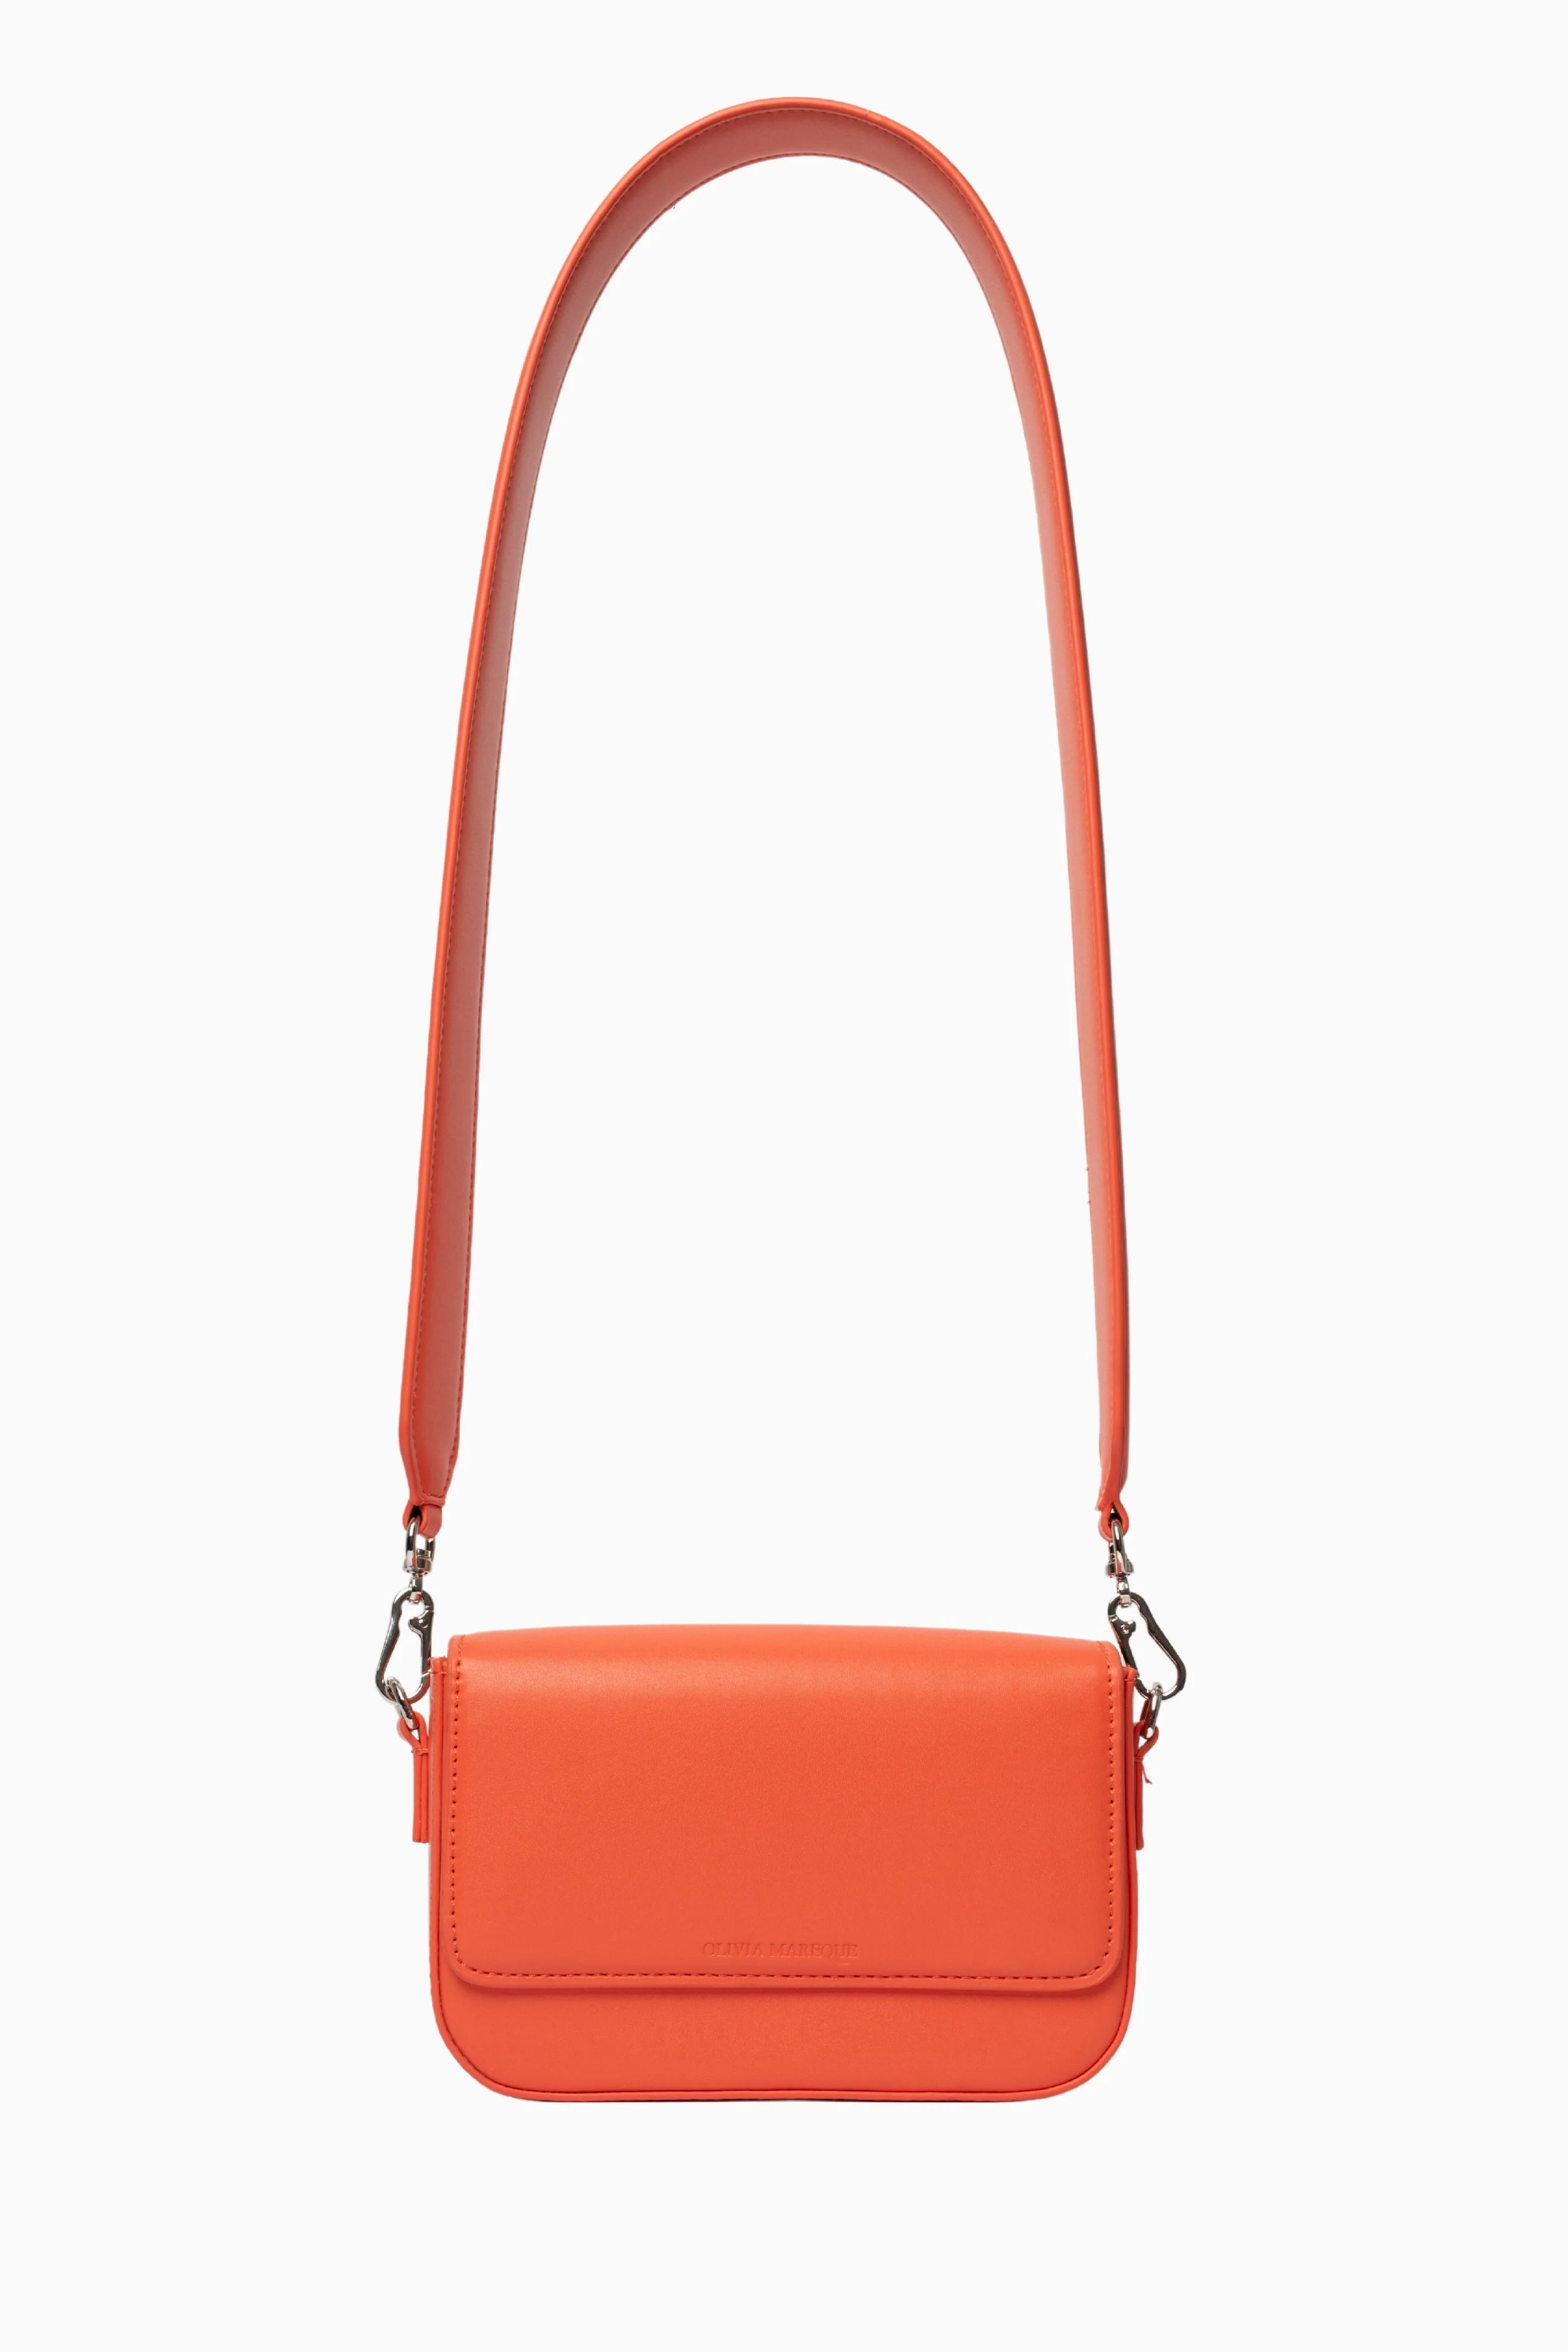 Pantone Orange Bag